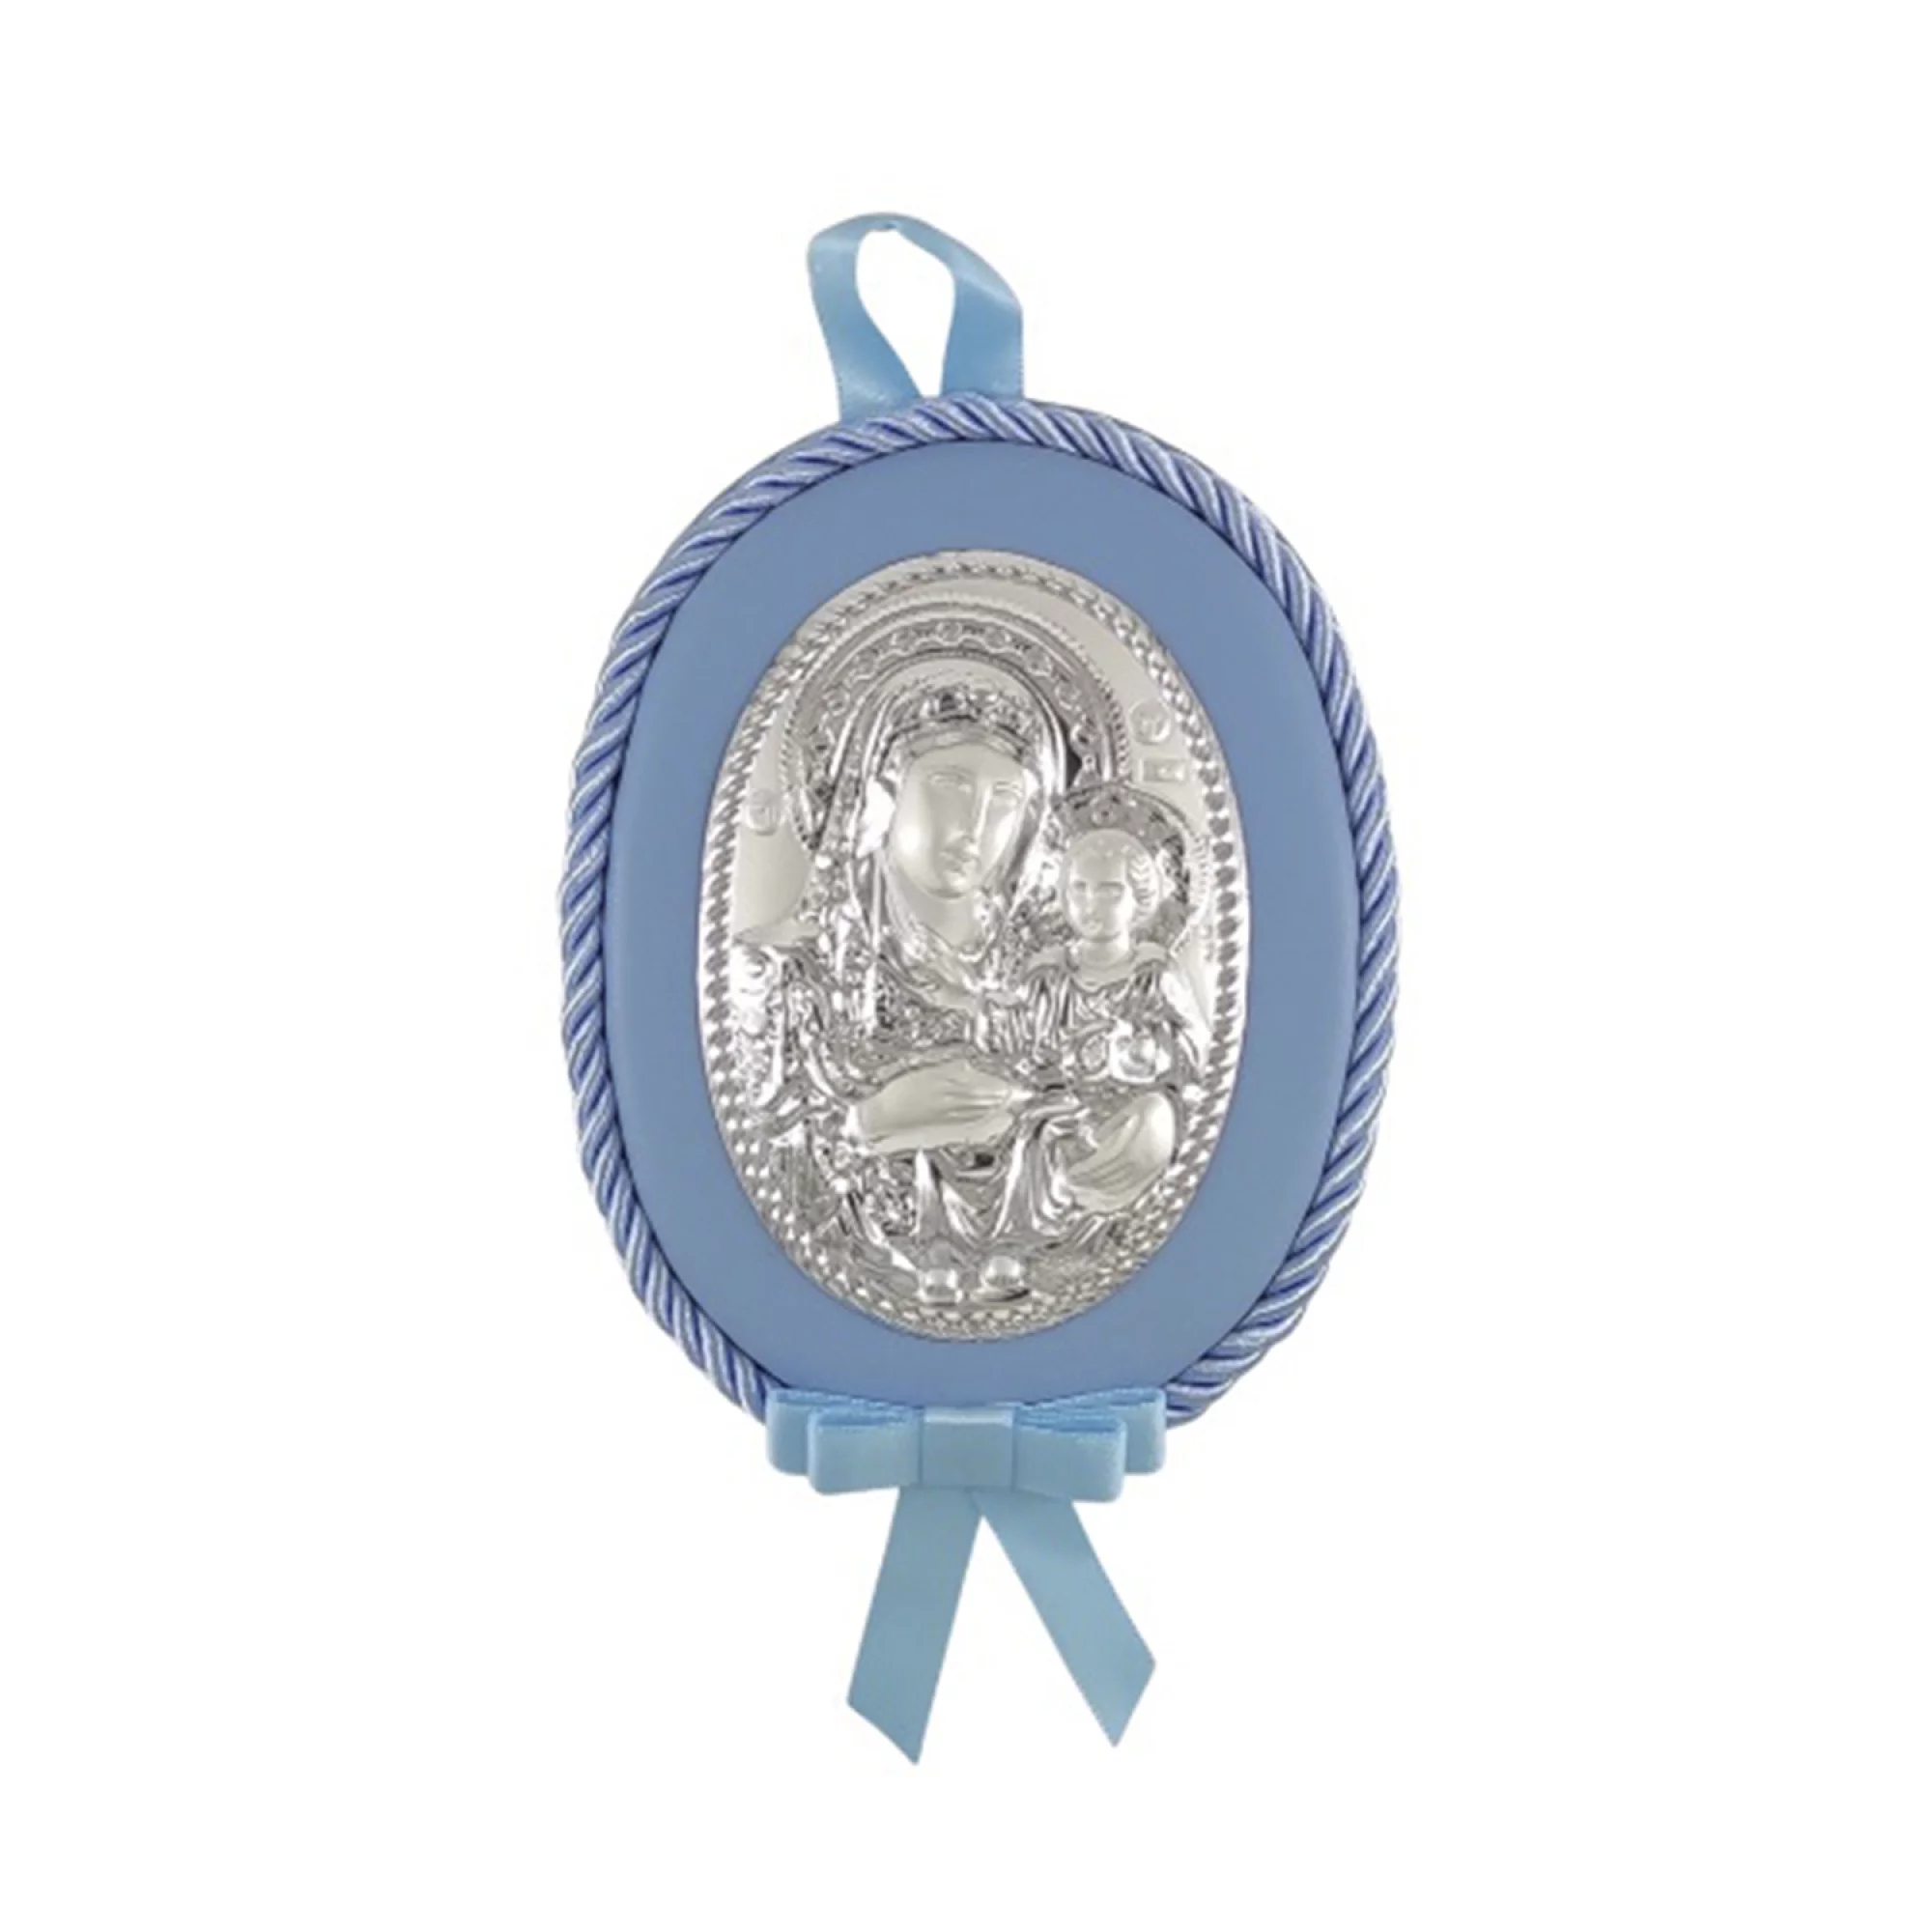 Дитячий срібний подарунок ікона "Божа Матір" - 1593315 – зображення 1